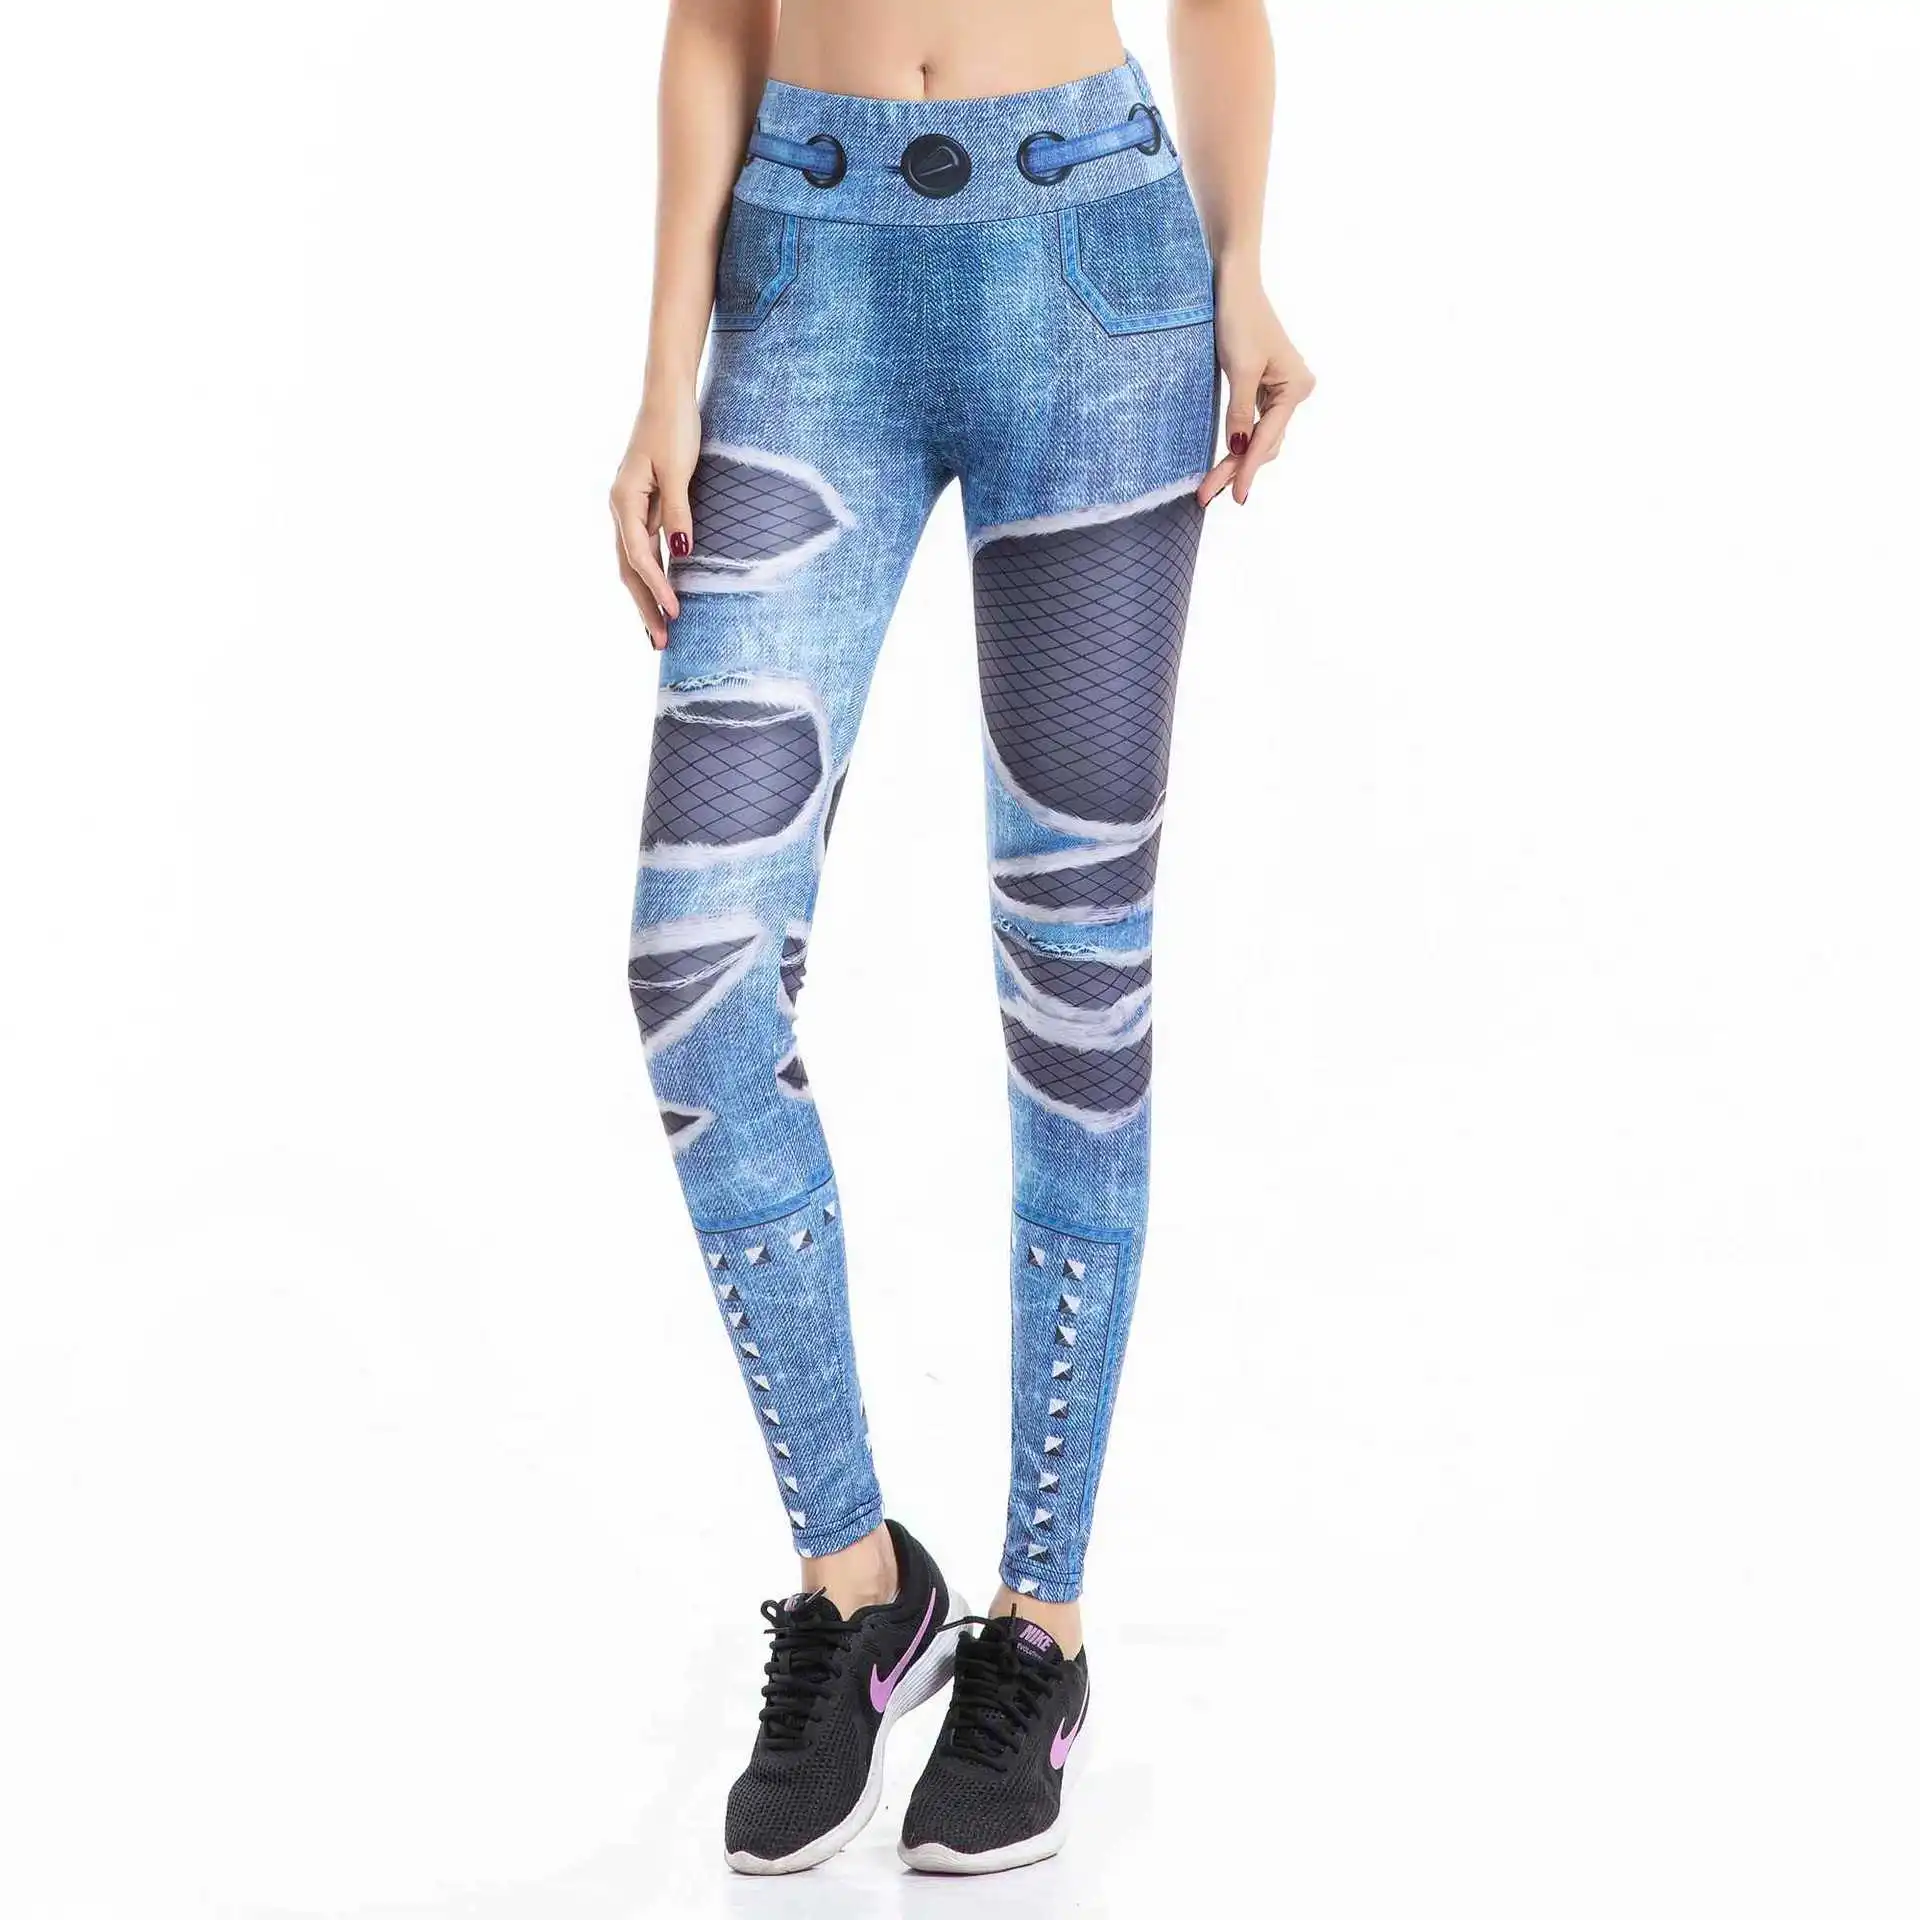 Джинсовые синие штаны для йоги леггинсы с 3D принтом джинсы женщин джеггинсы